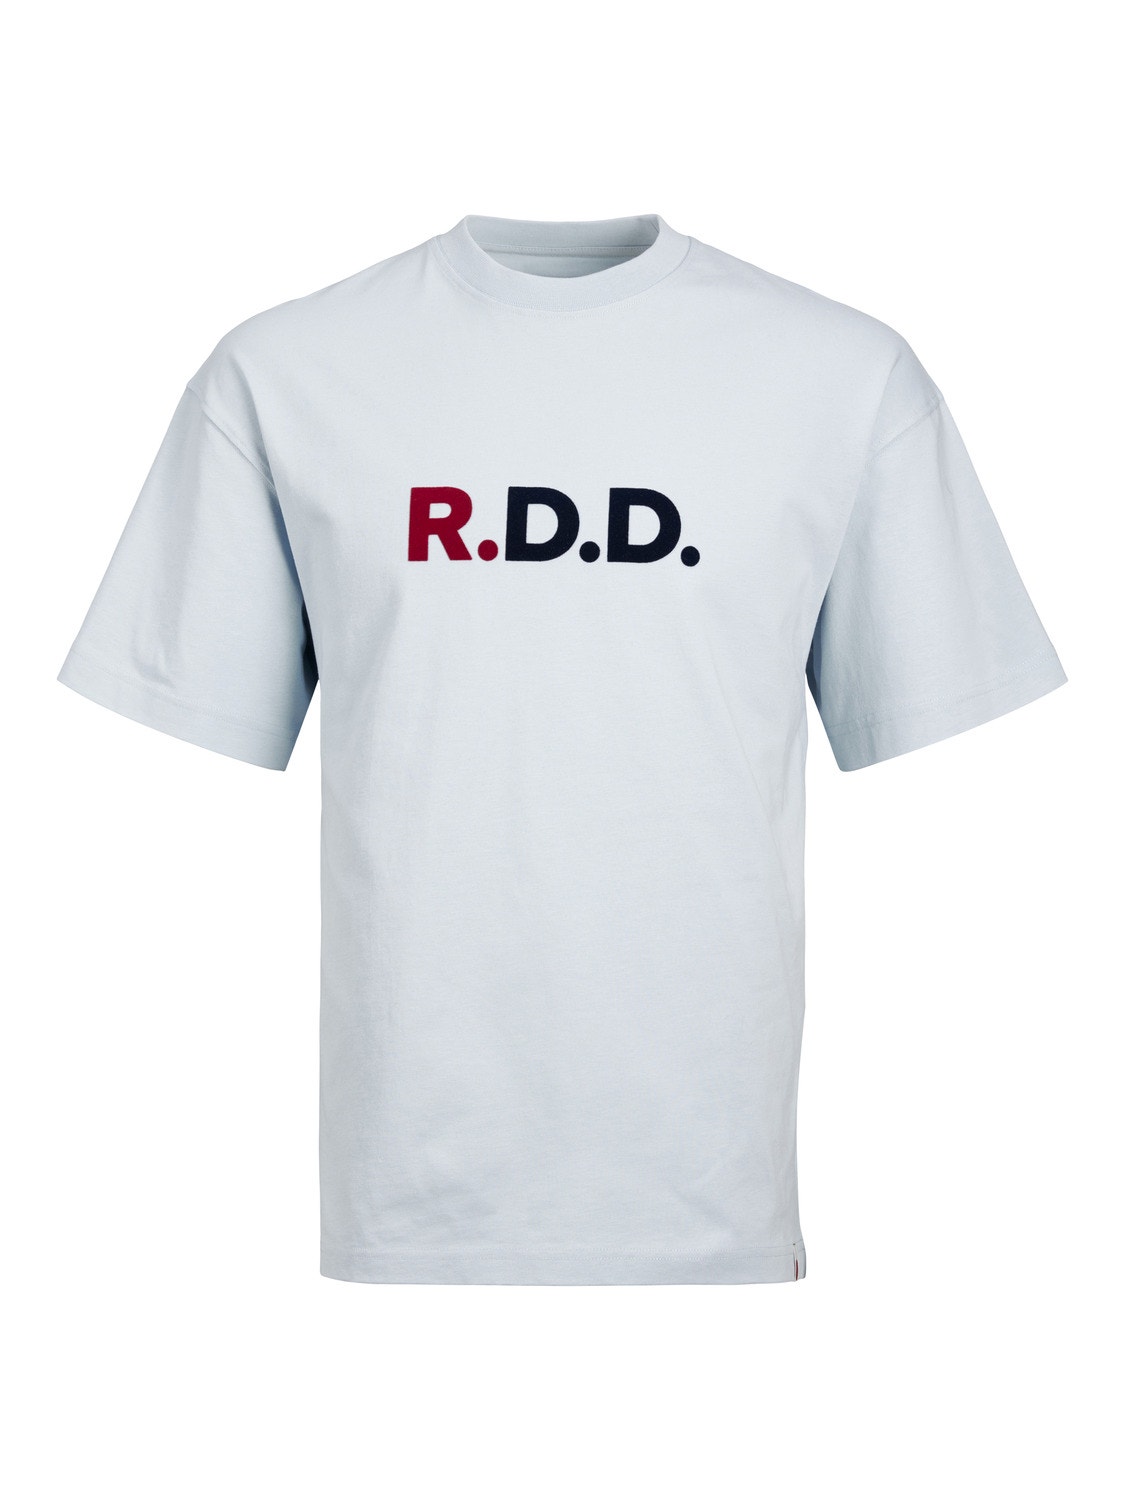 Jack & Jones RDD Logo Crew neck T-shirt -Dream Blue - 12218239